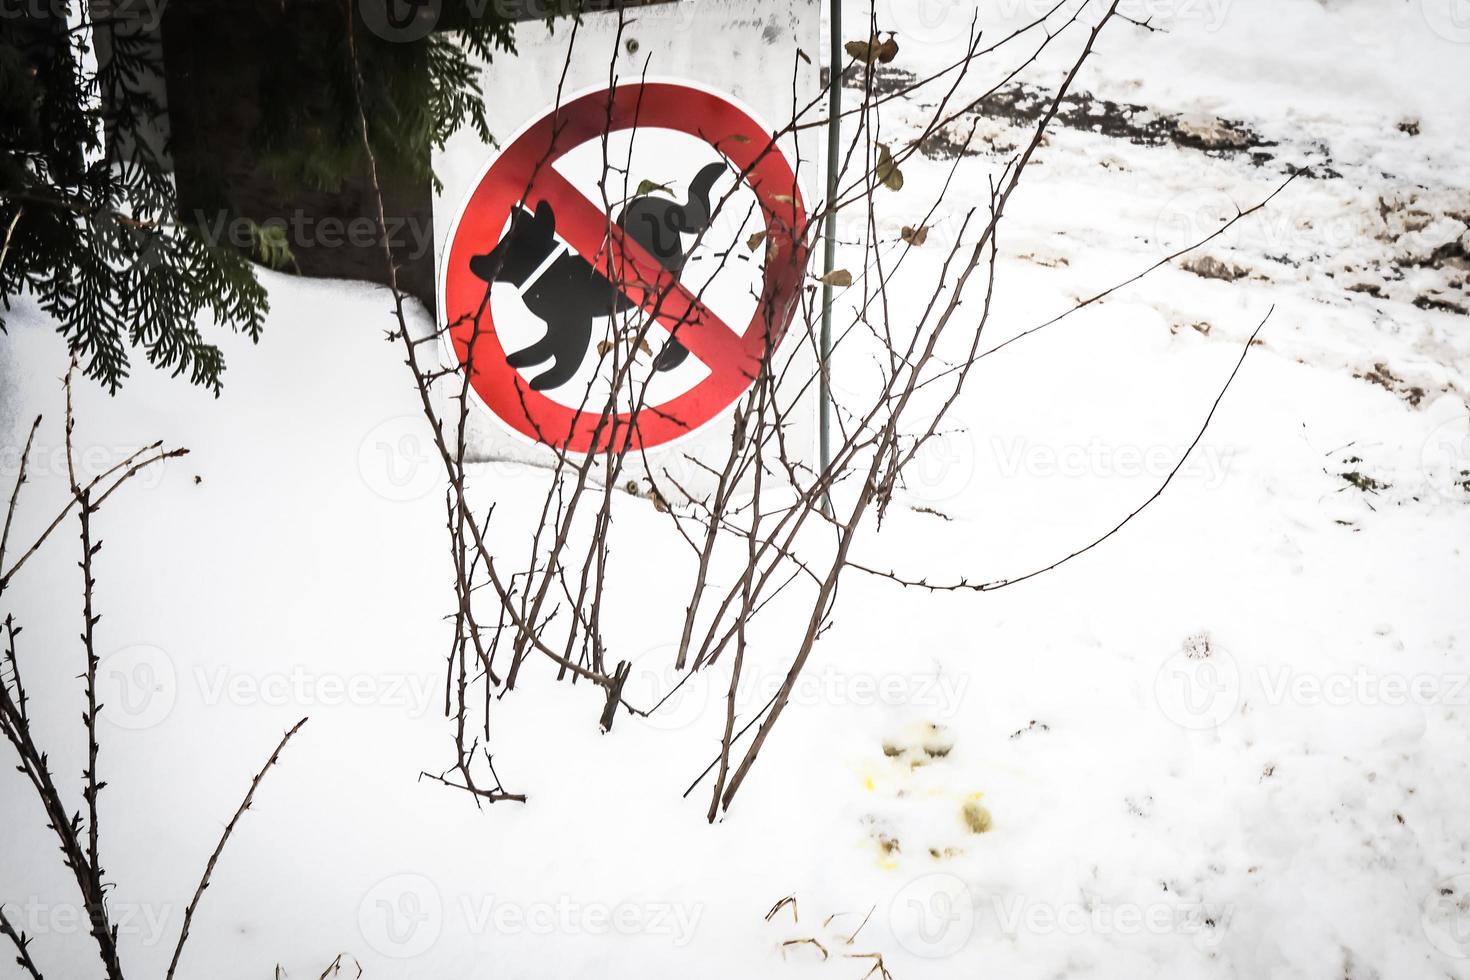 No hay señal de perro cuadrado de zona de orina con círculo cruzado rojo sobre fondo de césped de nieve en invierno foto